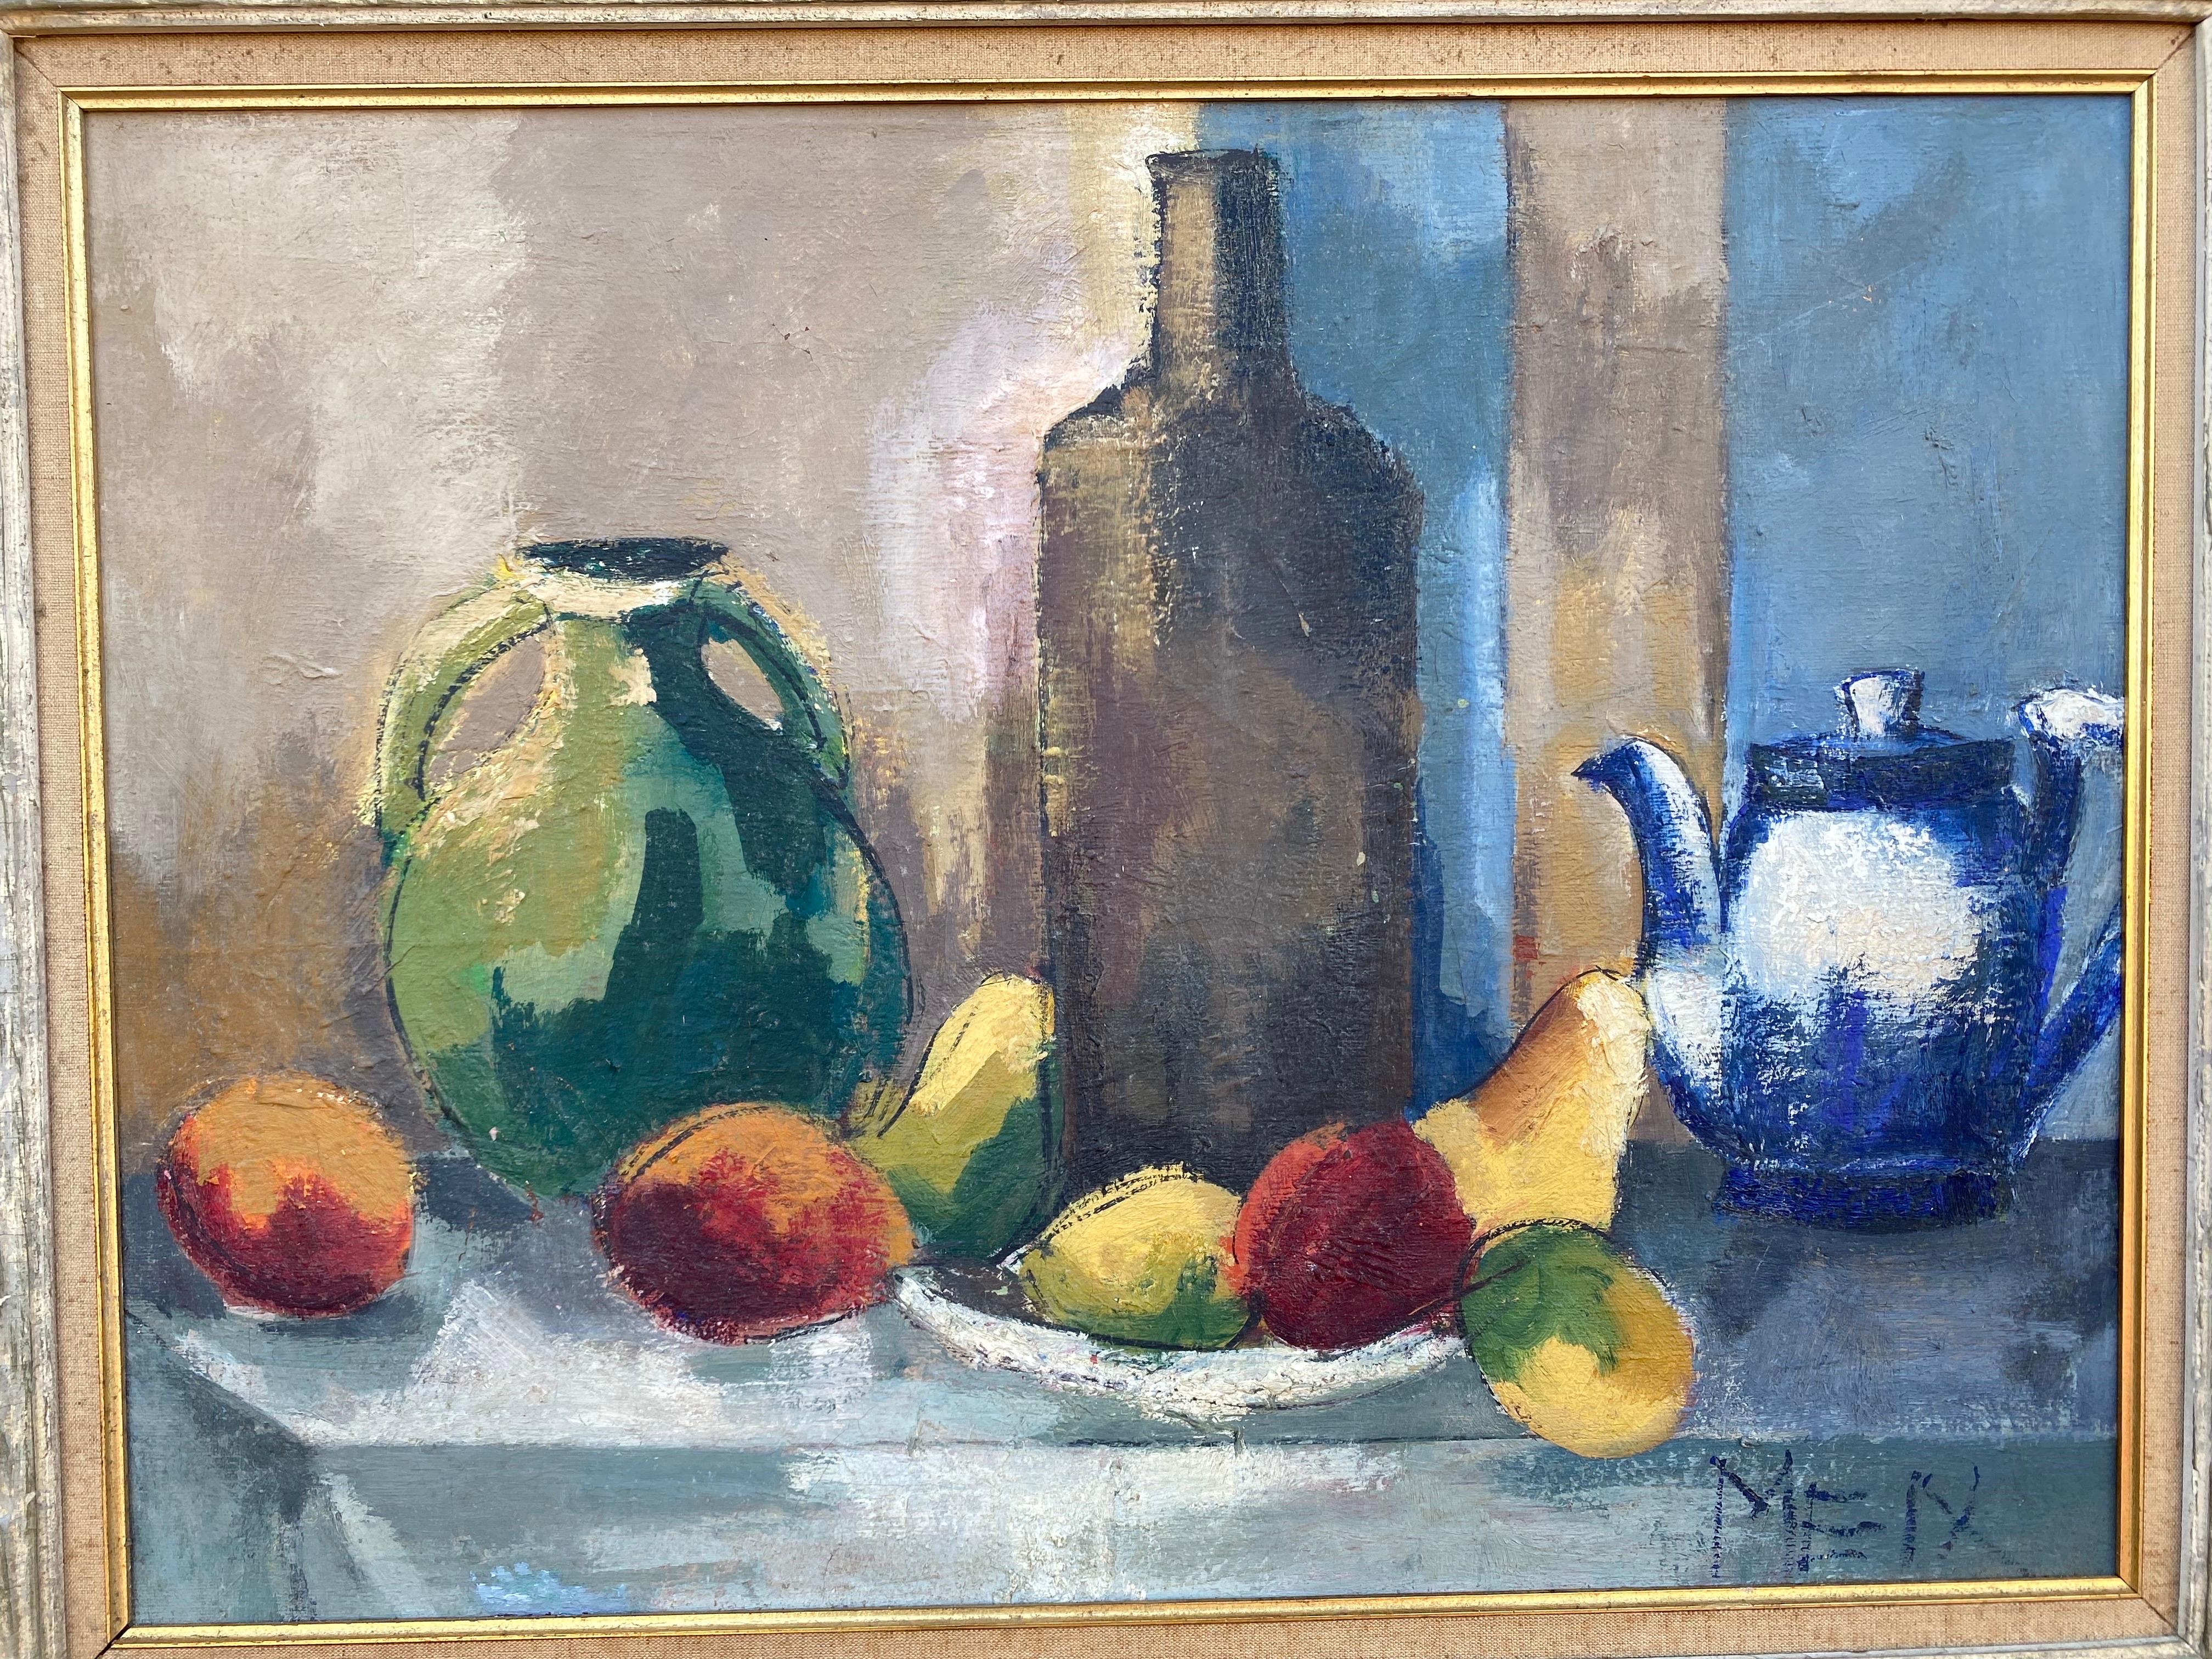 Öl auf Leinwand - Stillleben mit Flaschen, Vasen und Teekanne.  Schöne Farben!  Original Frame zeigt Gesso Verlust auf der linken Seite, sondern hat einen großen Blick!
